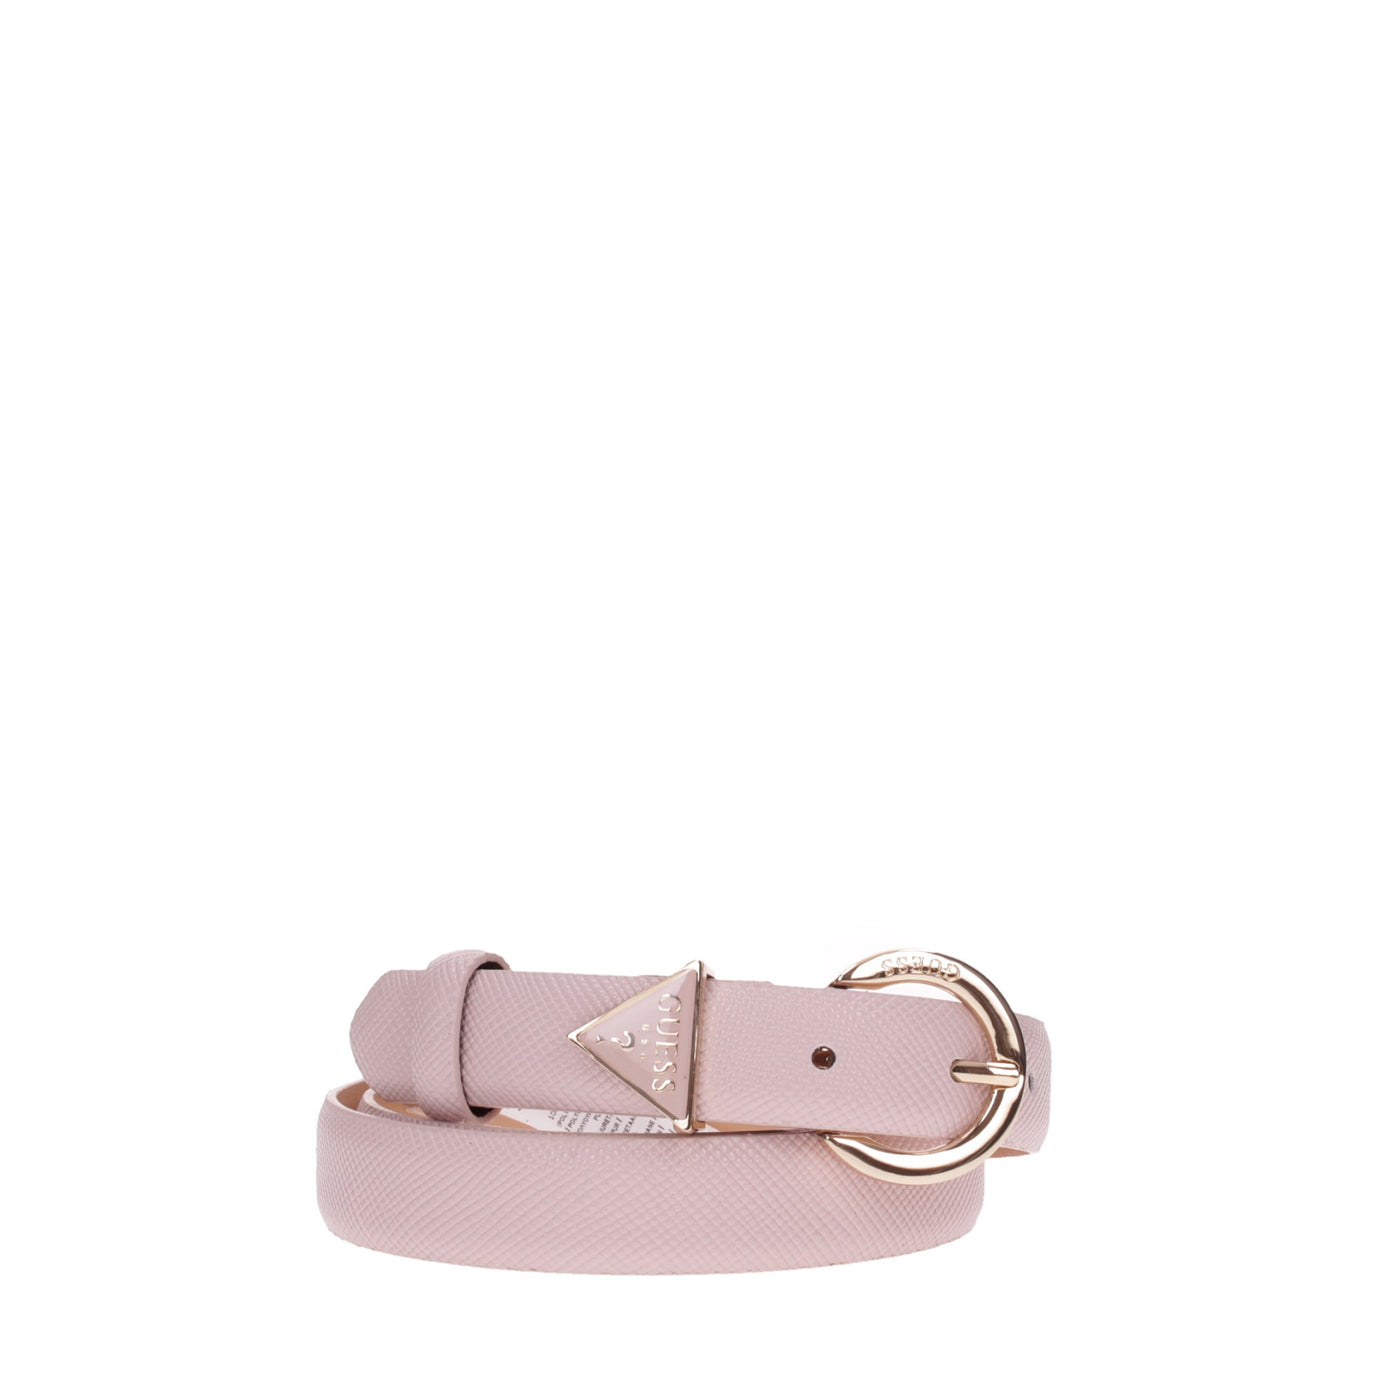 Guess Cintura#colore_rosa